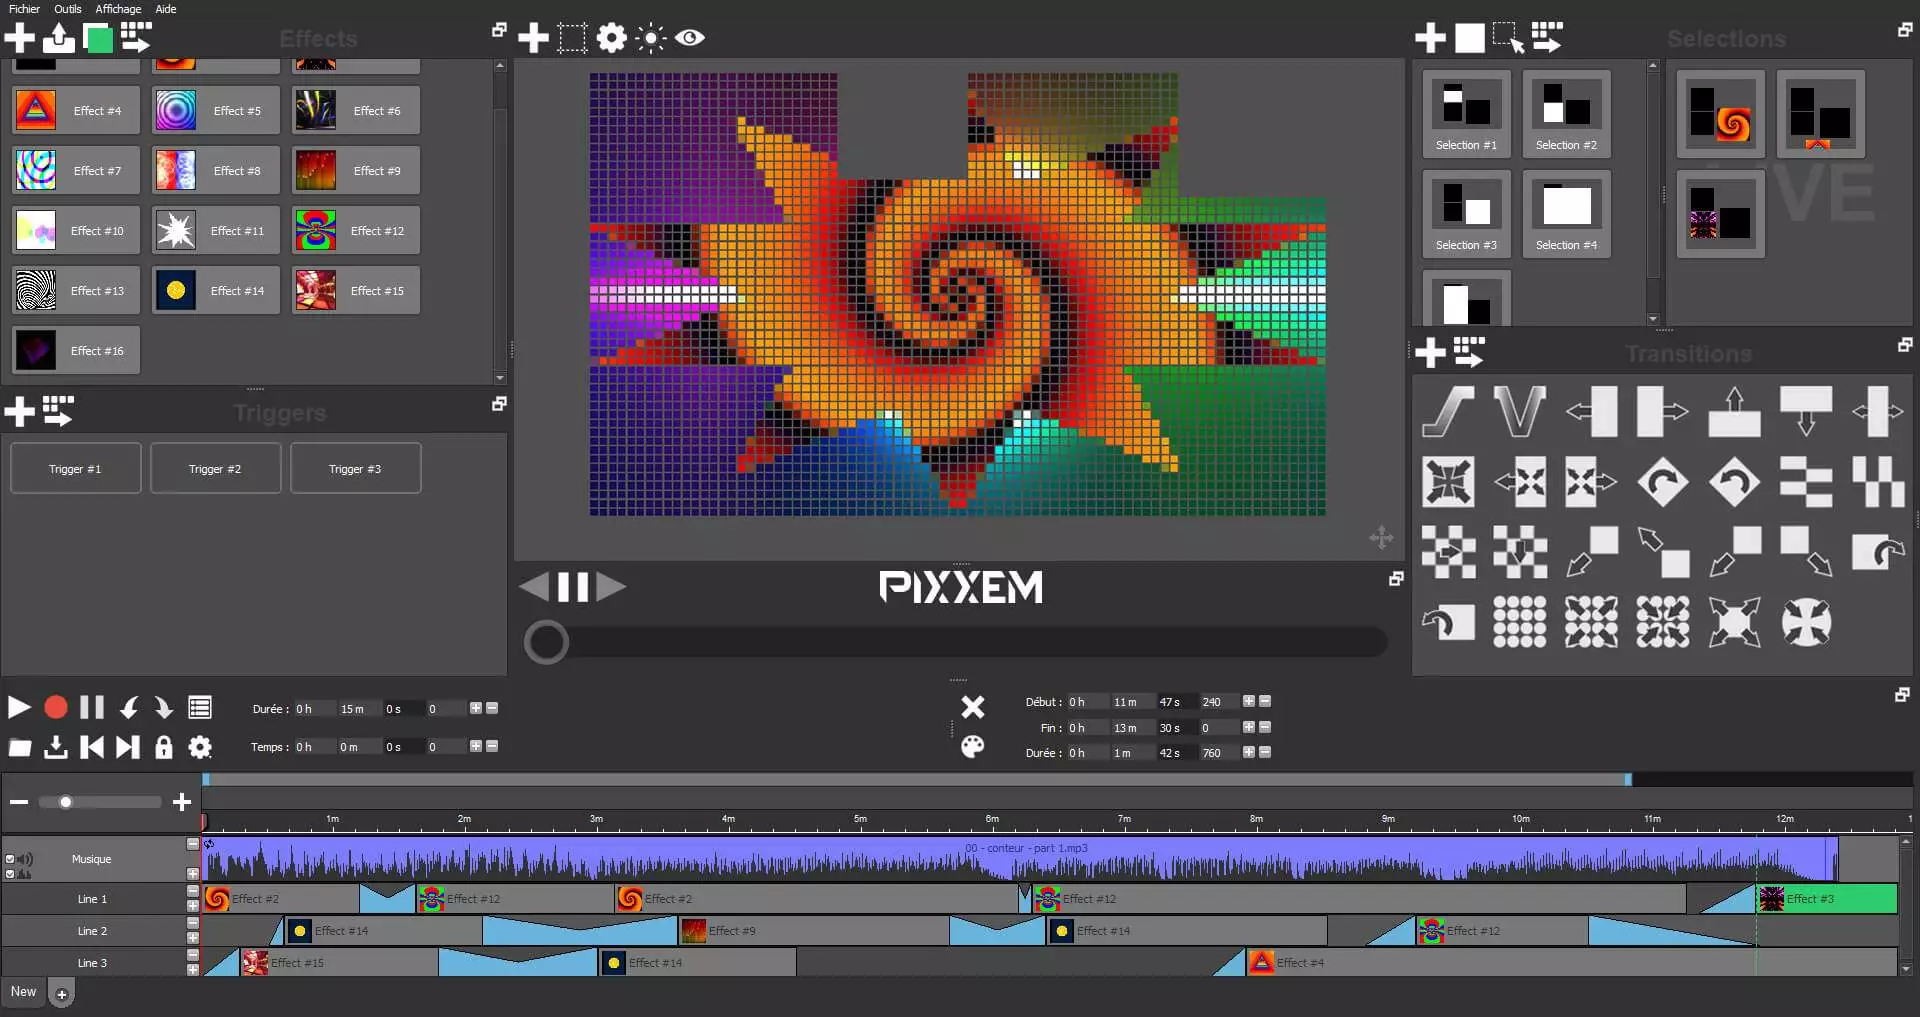 Pixxem full preview